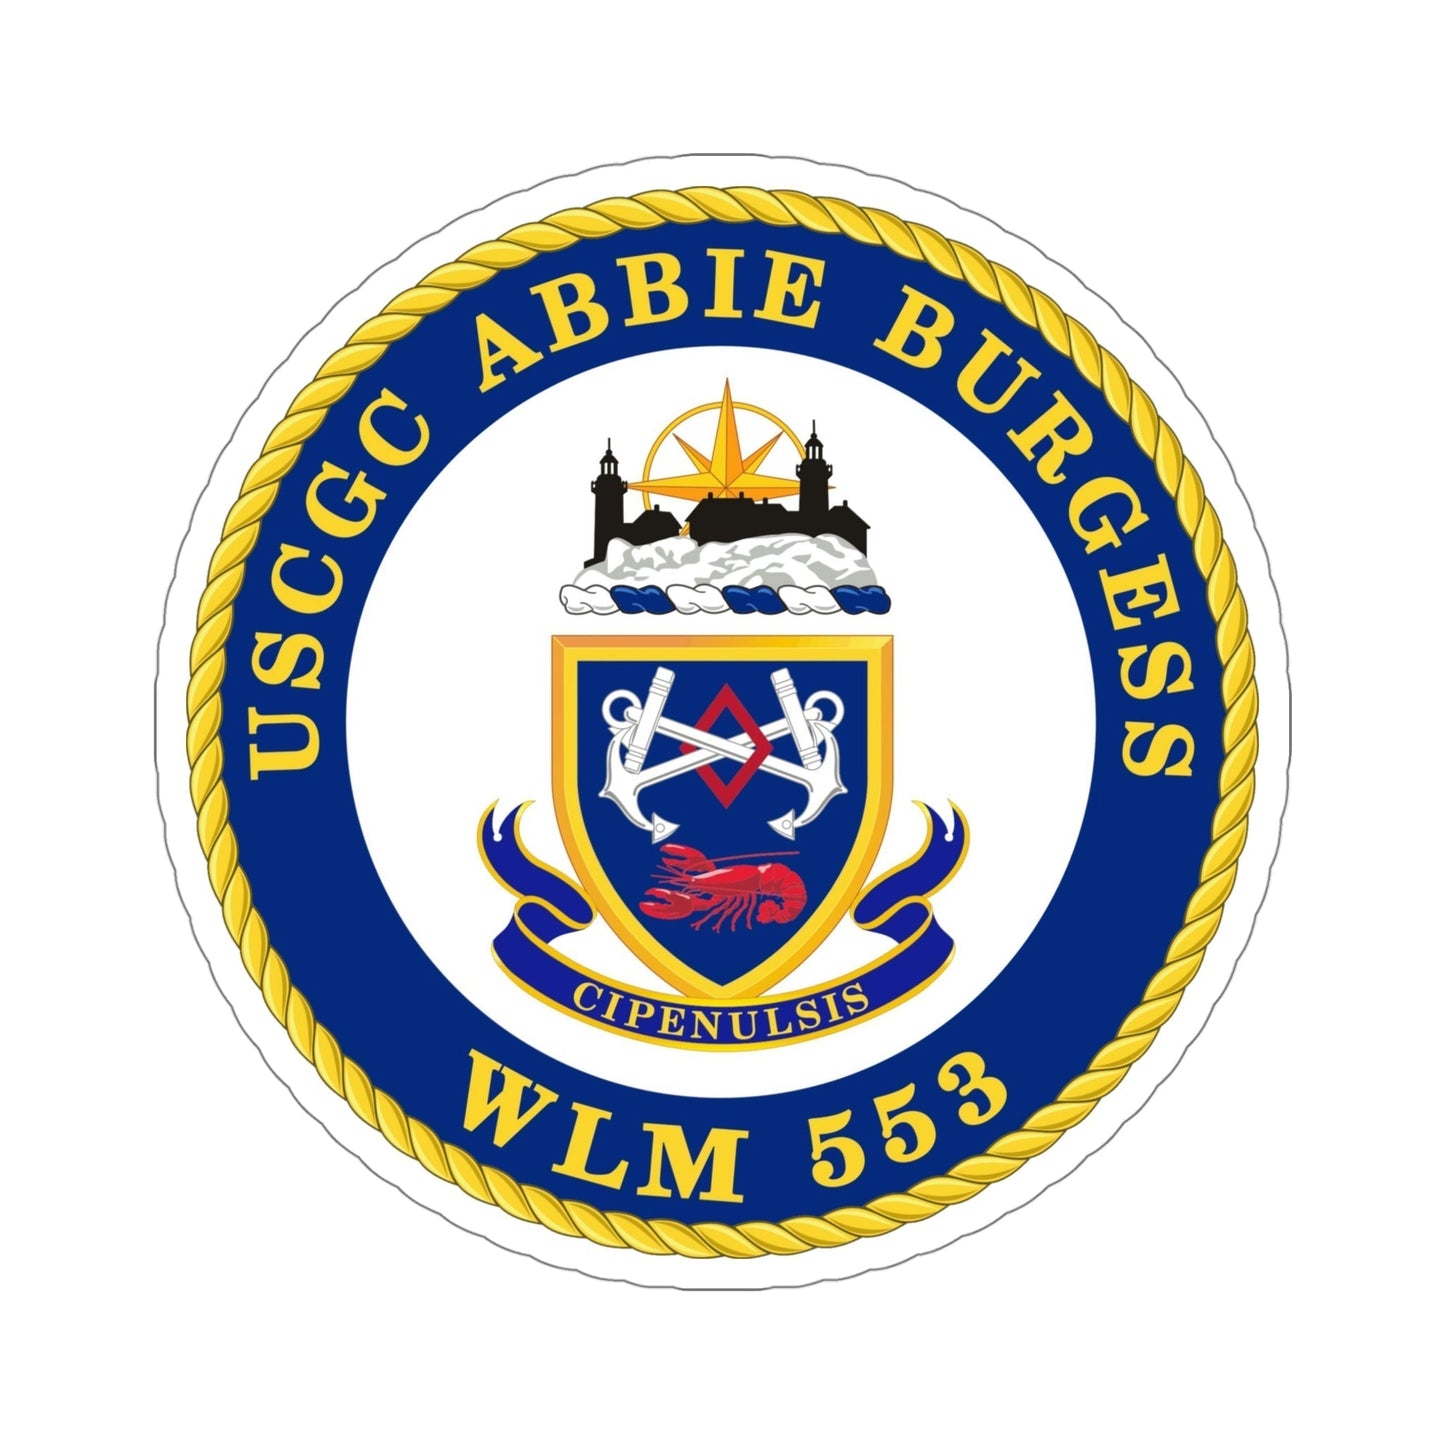 USCGC Abbie Burgess WLM 553 (U.S. Coast Guard) STICKER Vinyl Die-Cut Decal-5 Inch-The Sticker Space